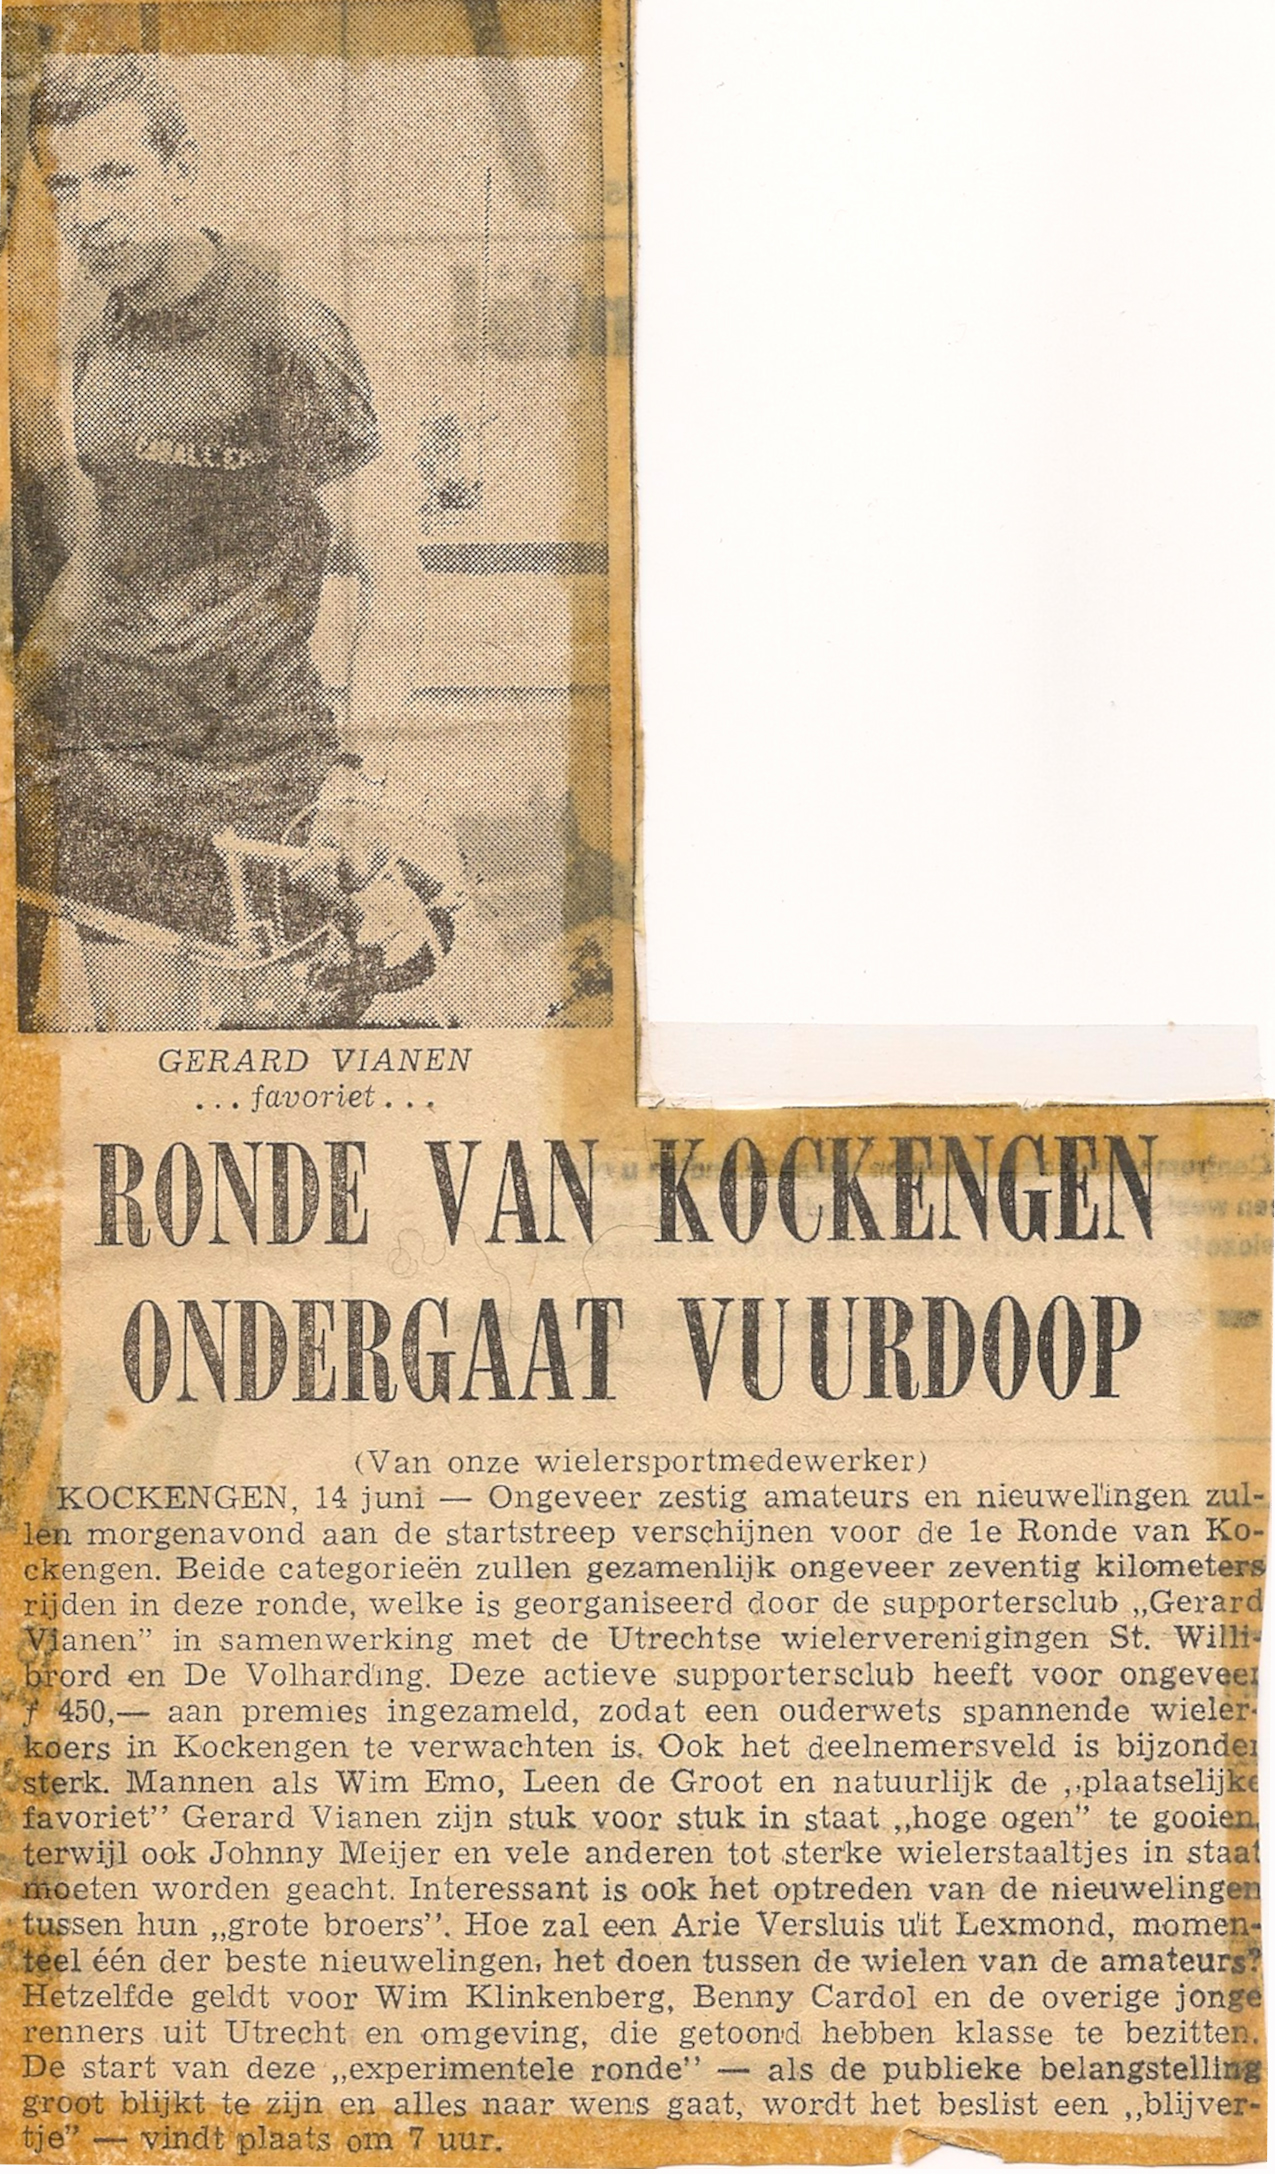 GV_ Ronde van Kockengen '66 ondergaat vuurdoop